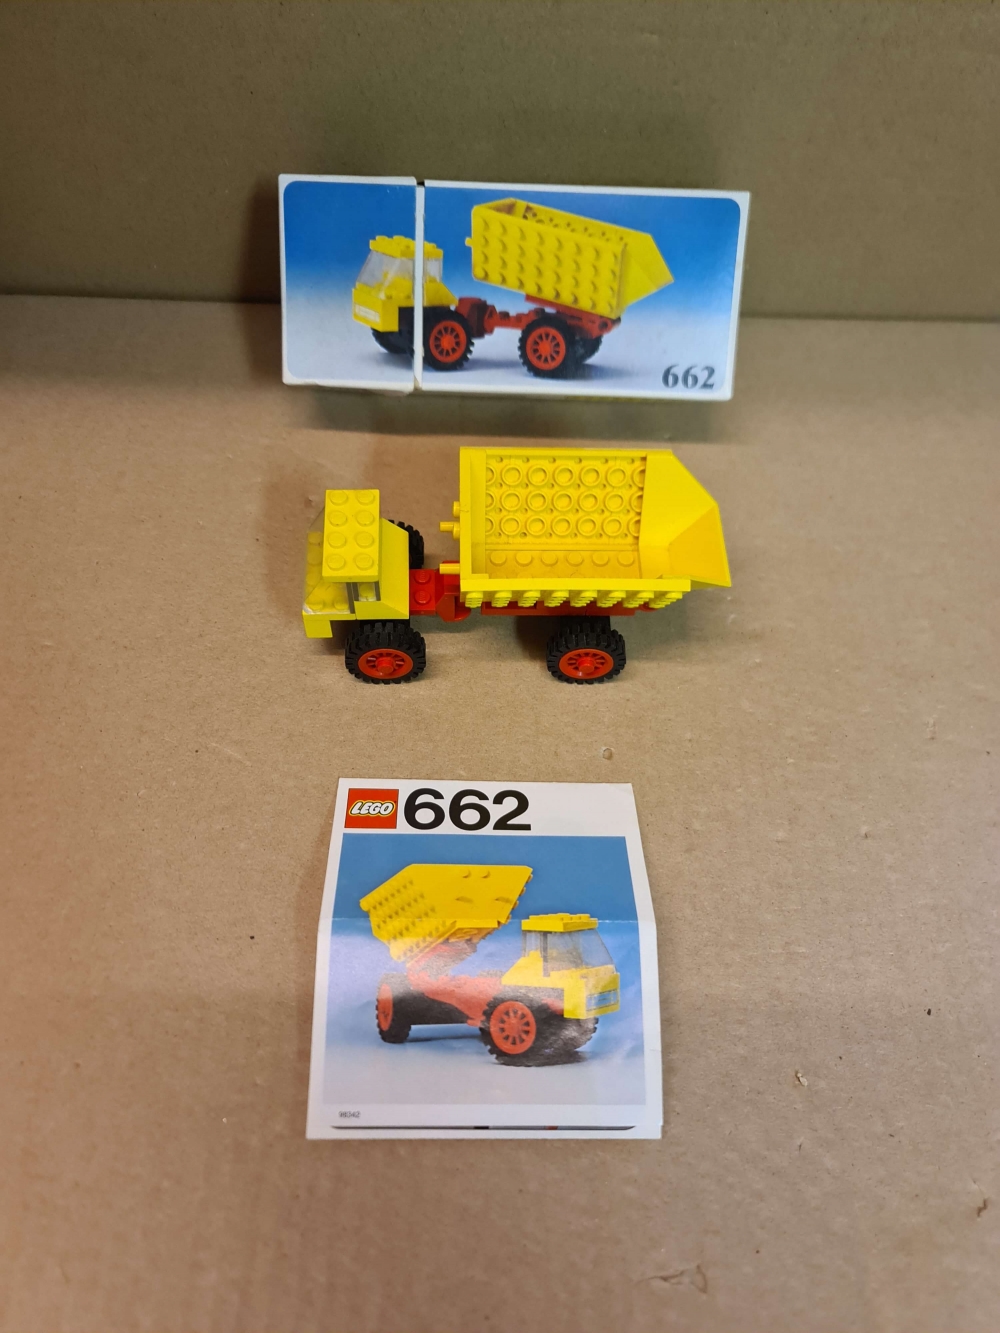 Sett 662 fra Lego Legoland serien.
Flott sett. 
Komplett med manual og eske.